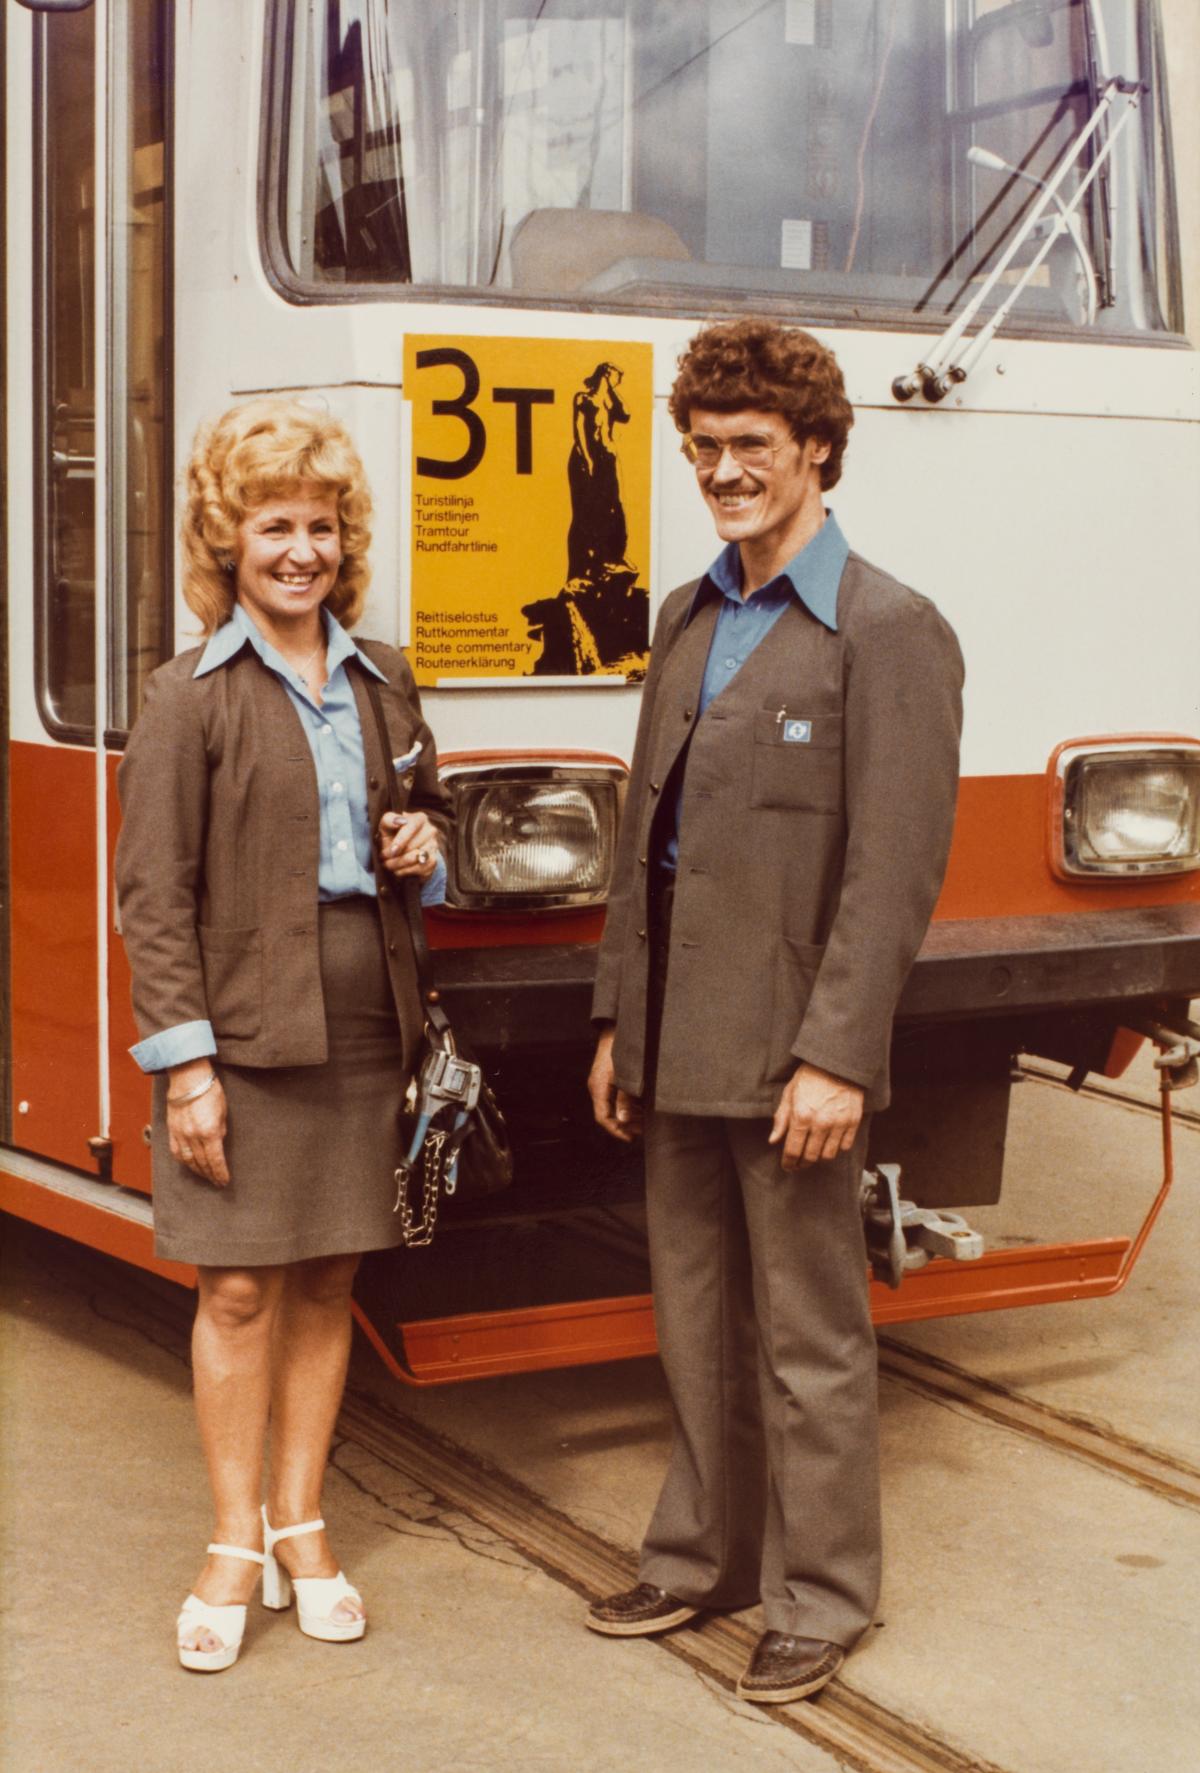 Konduktör och chaufför bär gråa uniform med ljusare skjortor. De står framför en orange spårvagn 3T. 